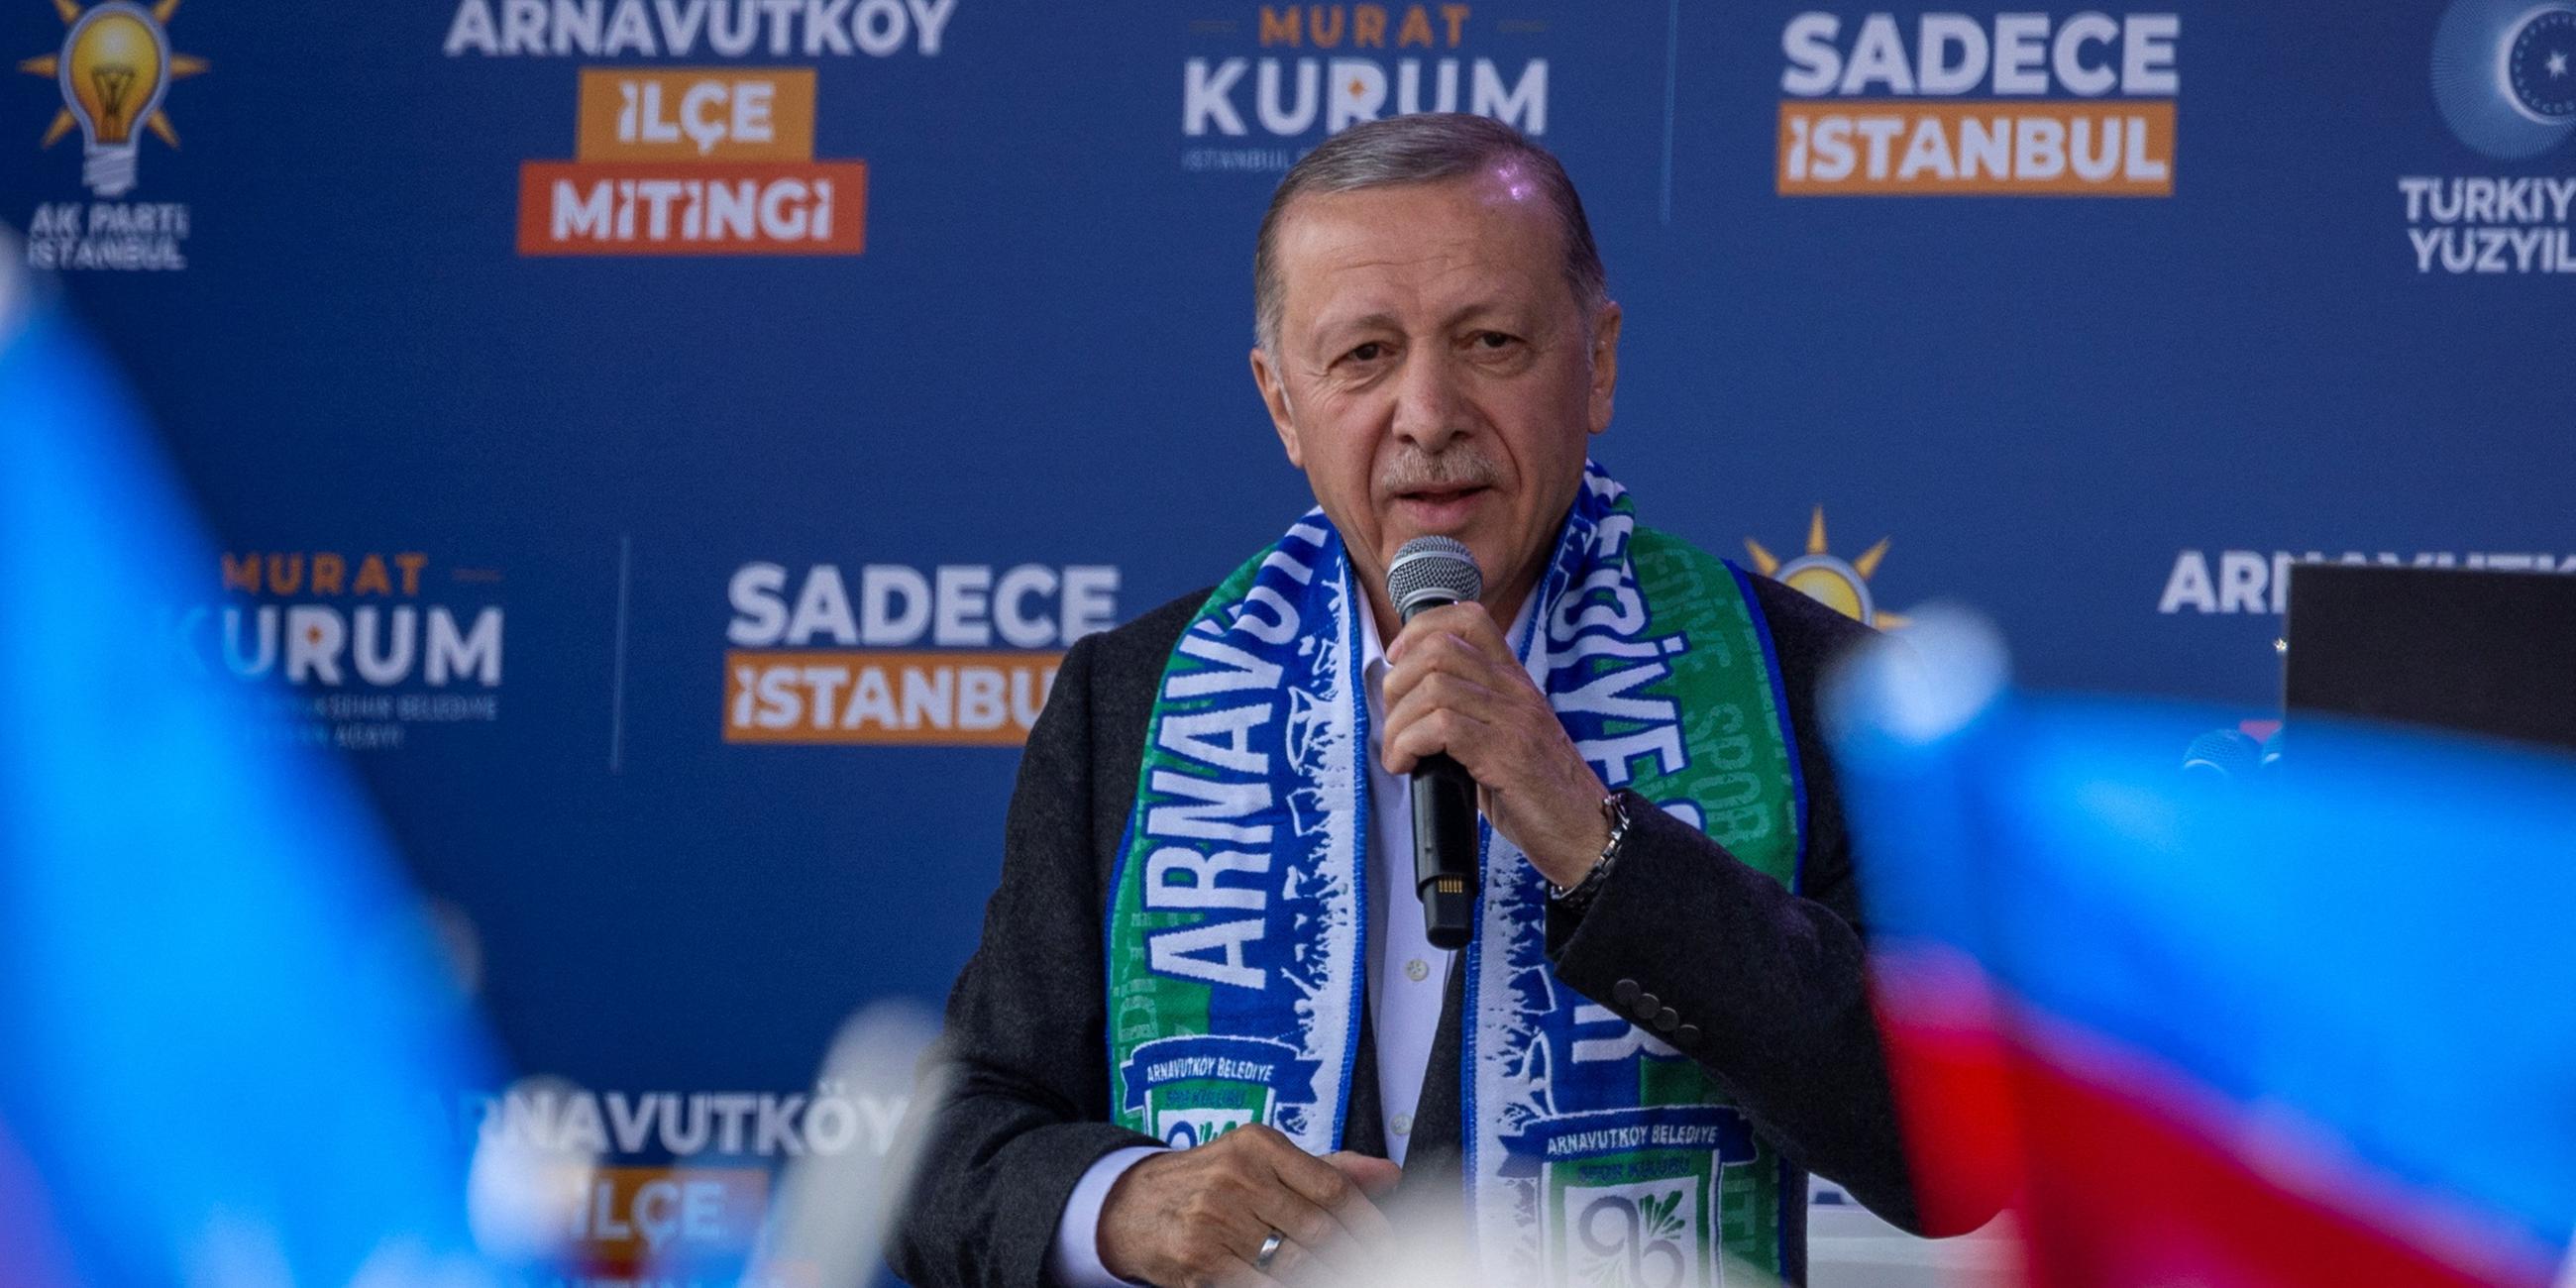 Der türkische Präsident Recep Tayyip Erdogan bei einer Wahlveranstaltung in Istanbul.